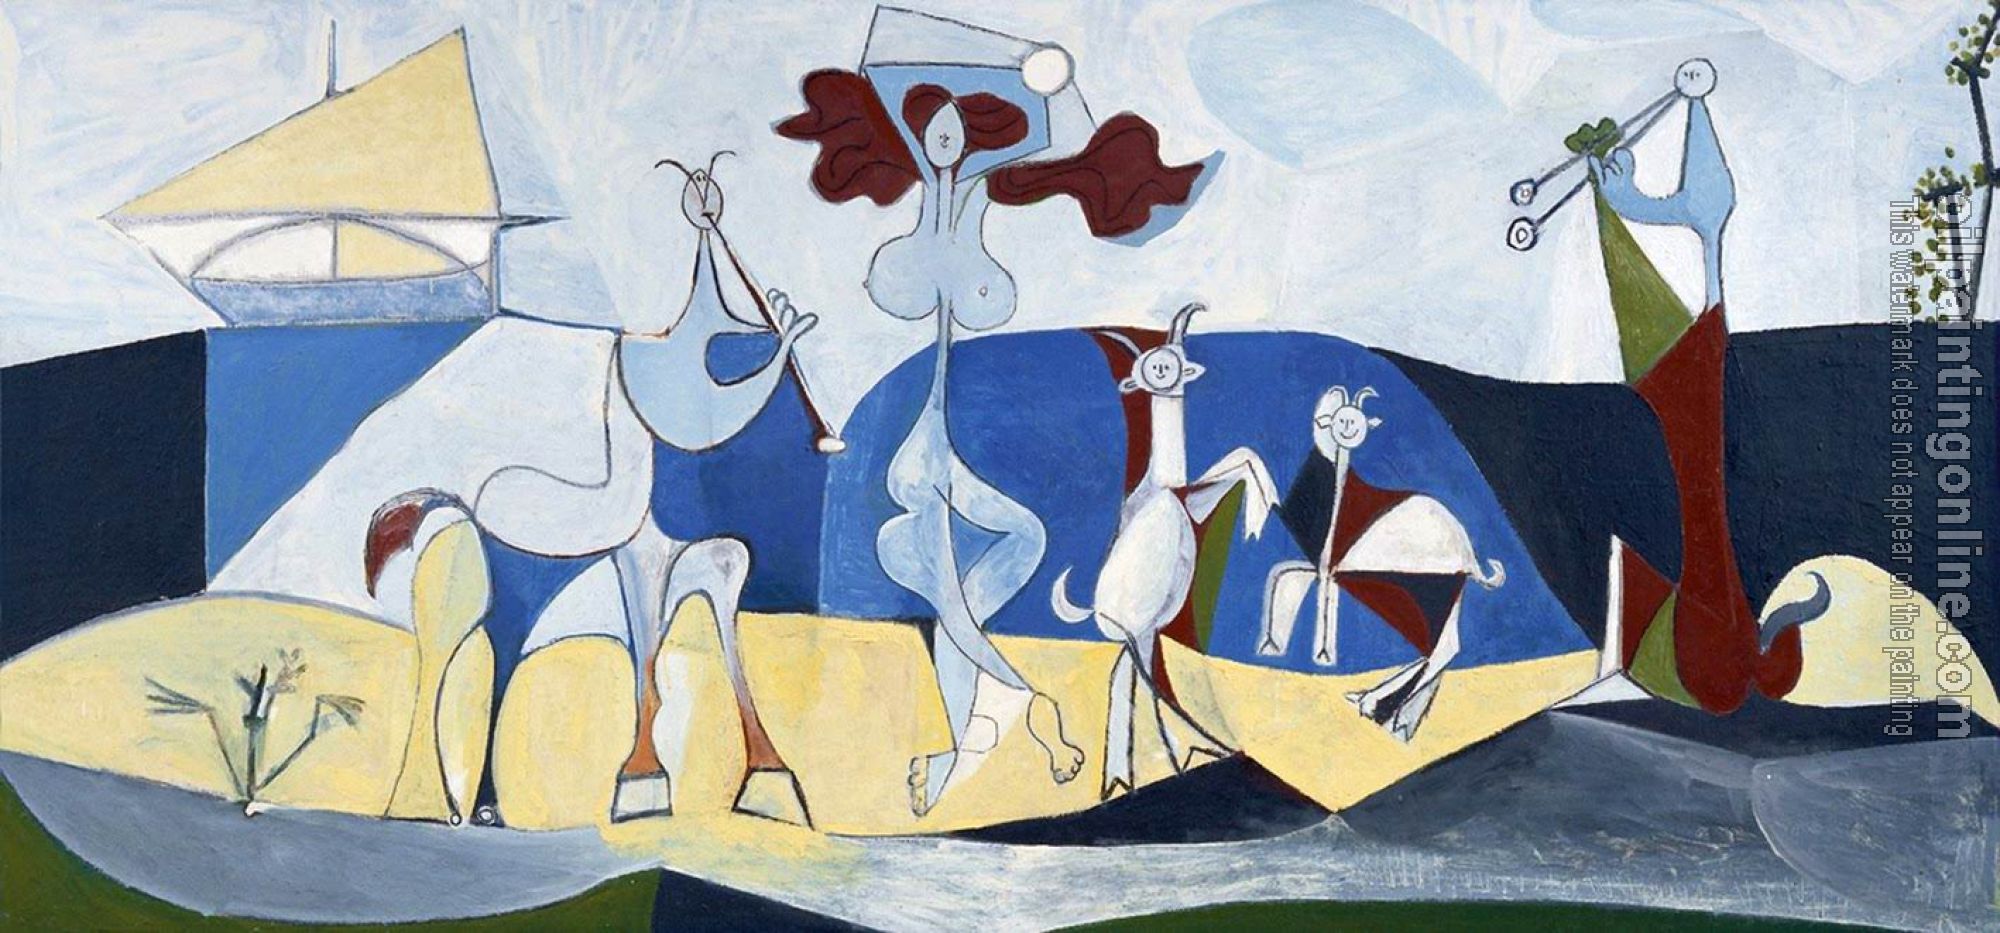 Picasso, Pablo - la joie de vivre